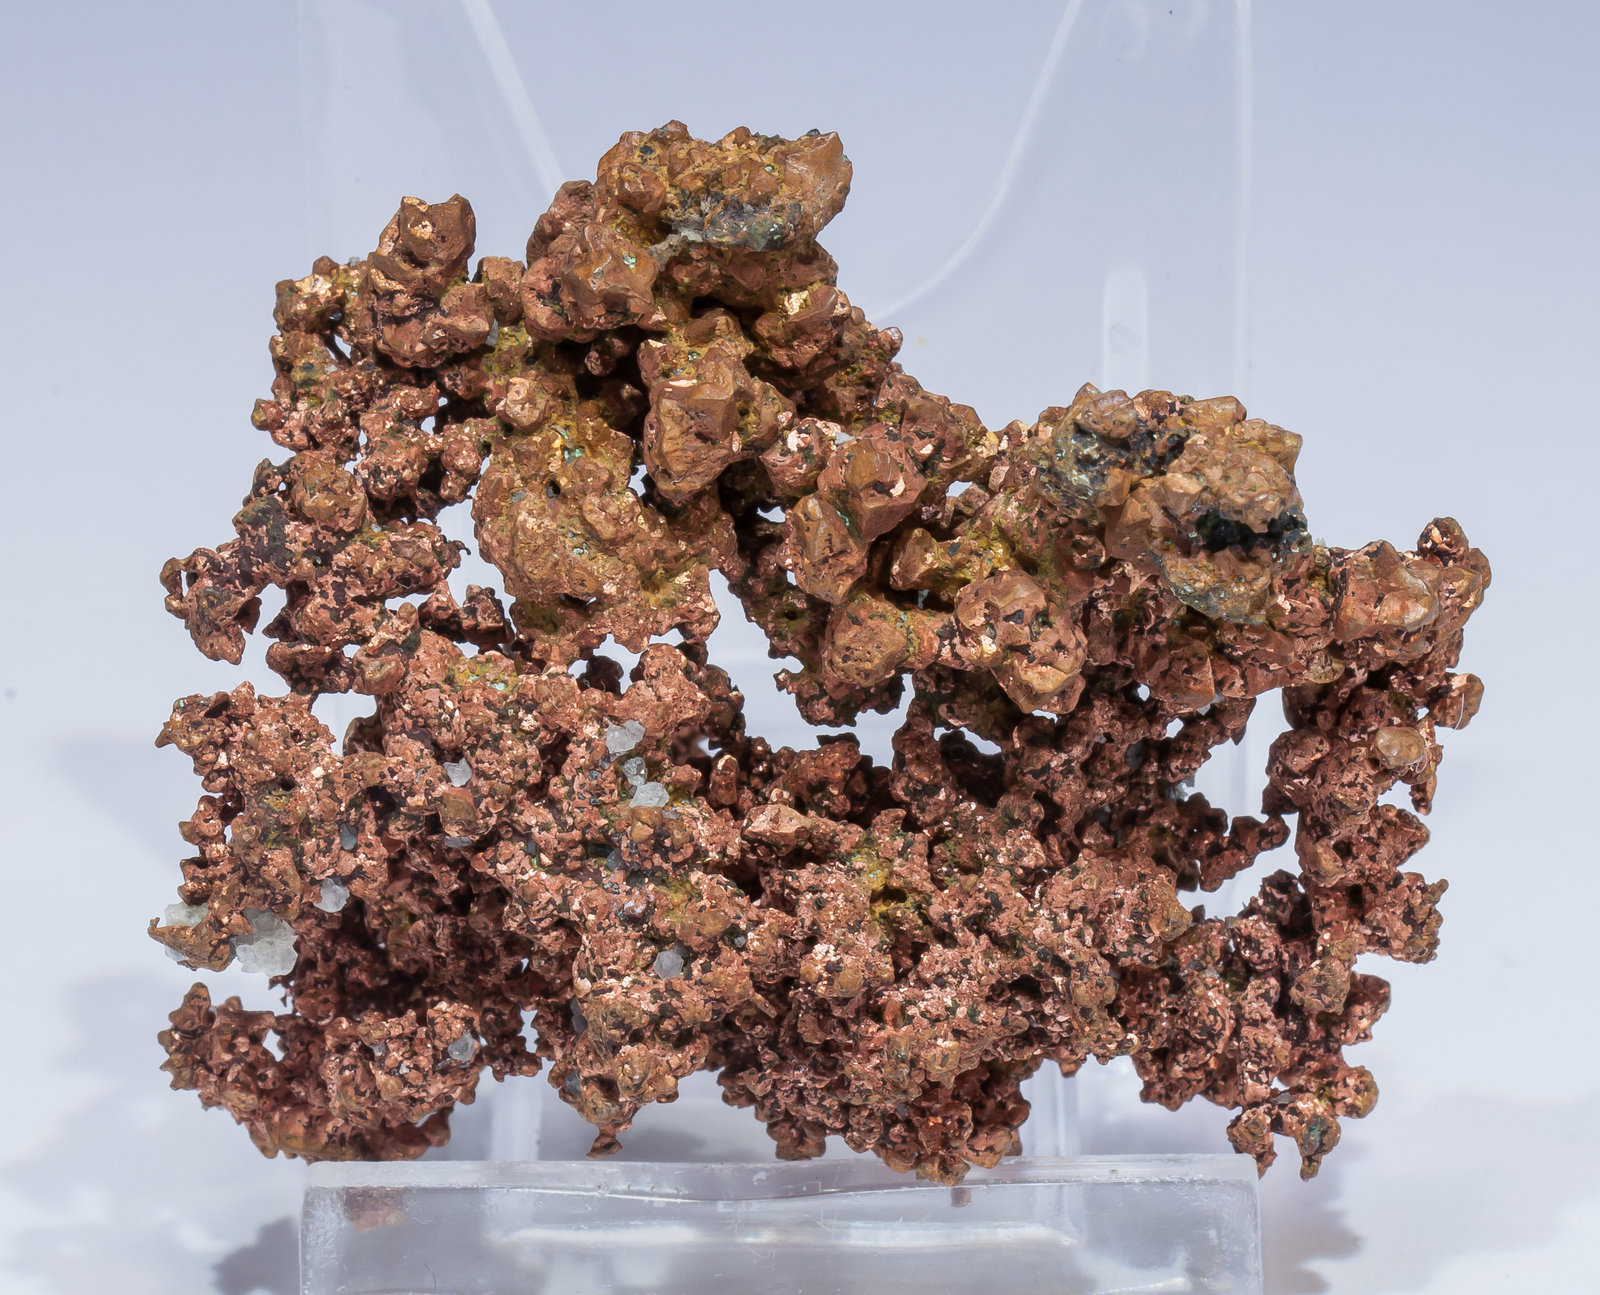 specimens/s_imagesAM5/Copper-EP76AM5f.jpg